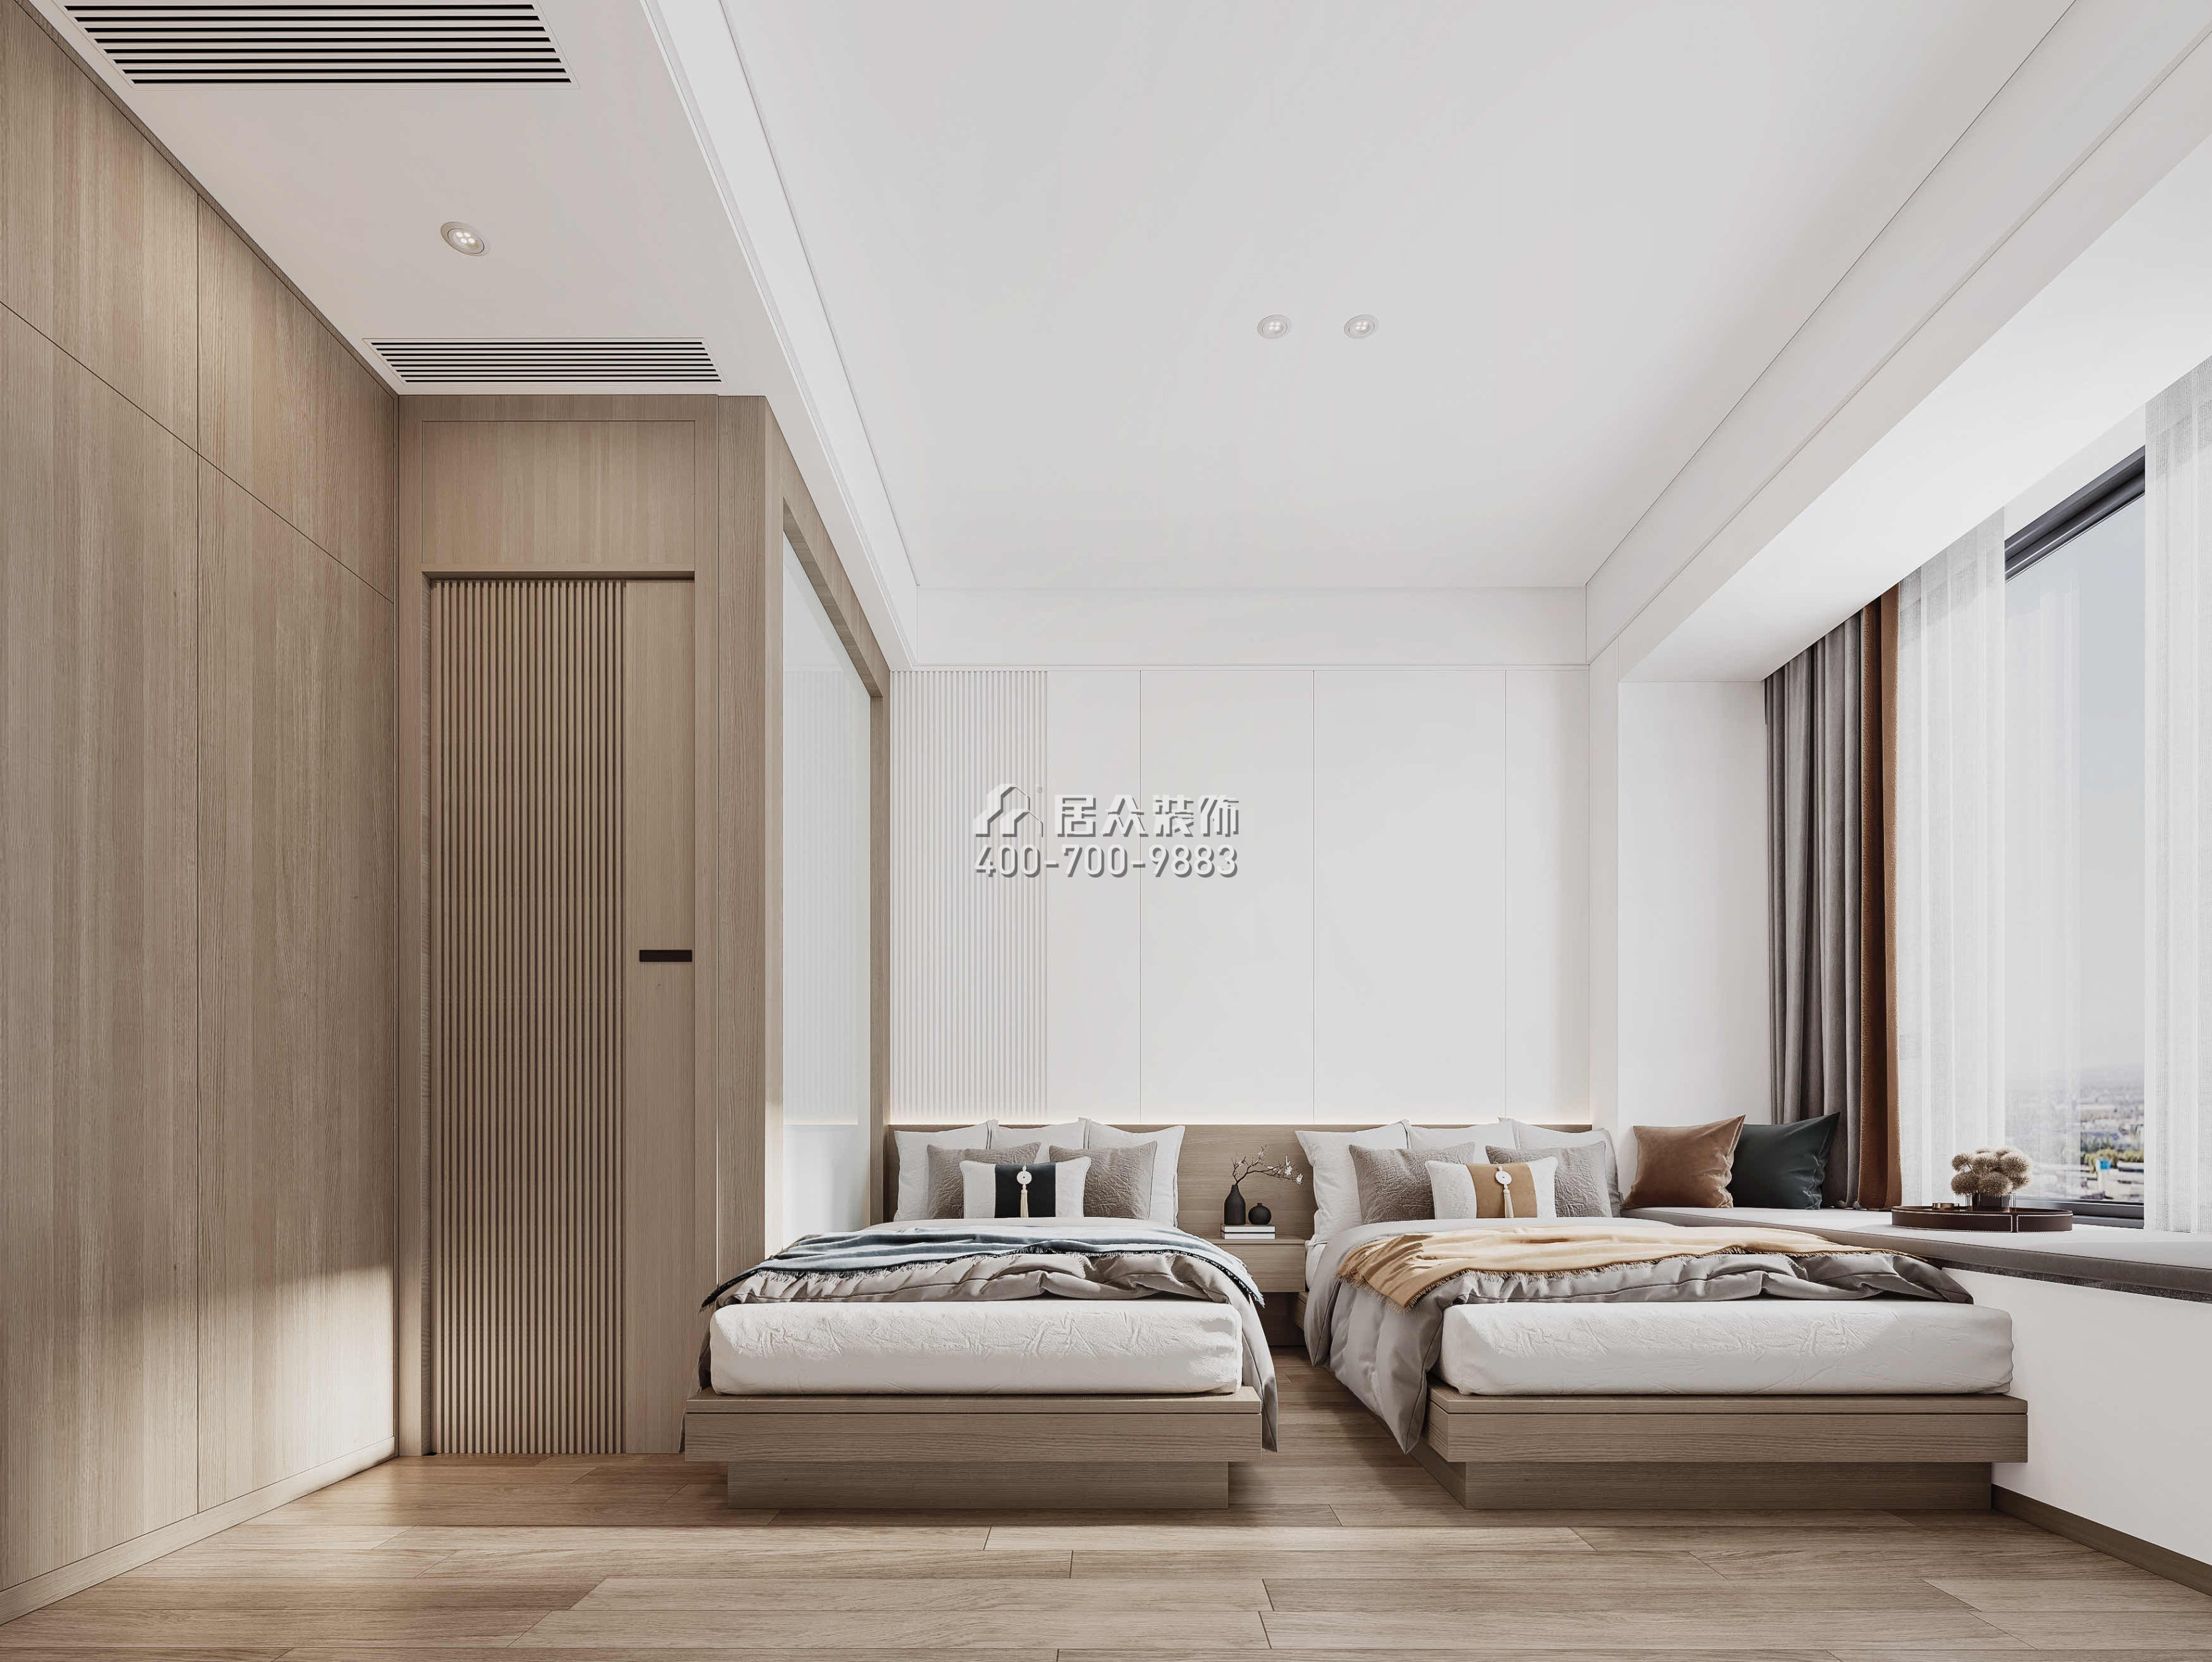 華發綠洋灣191平方米現代簡約風格平層戶型臥室裝修效果圖